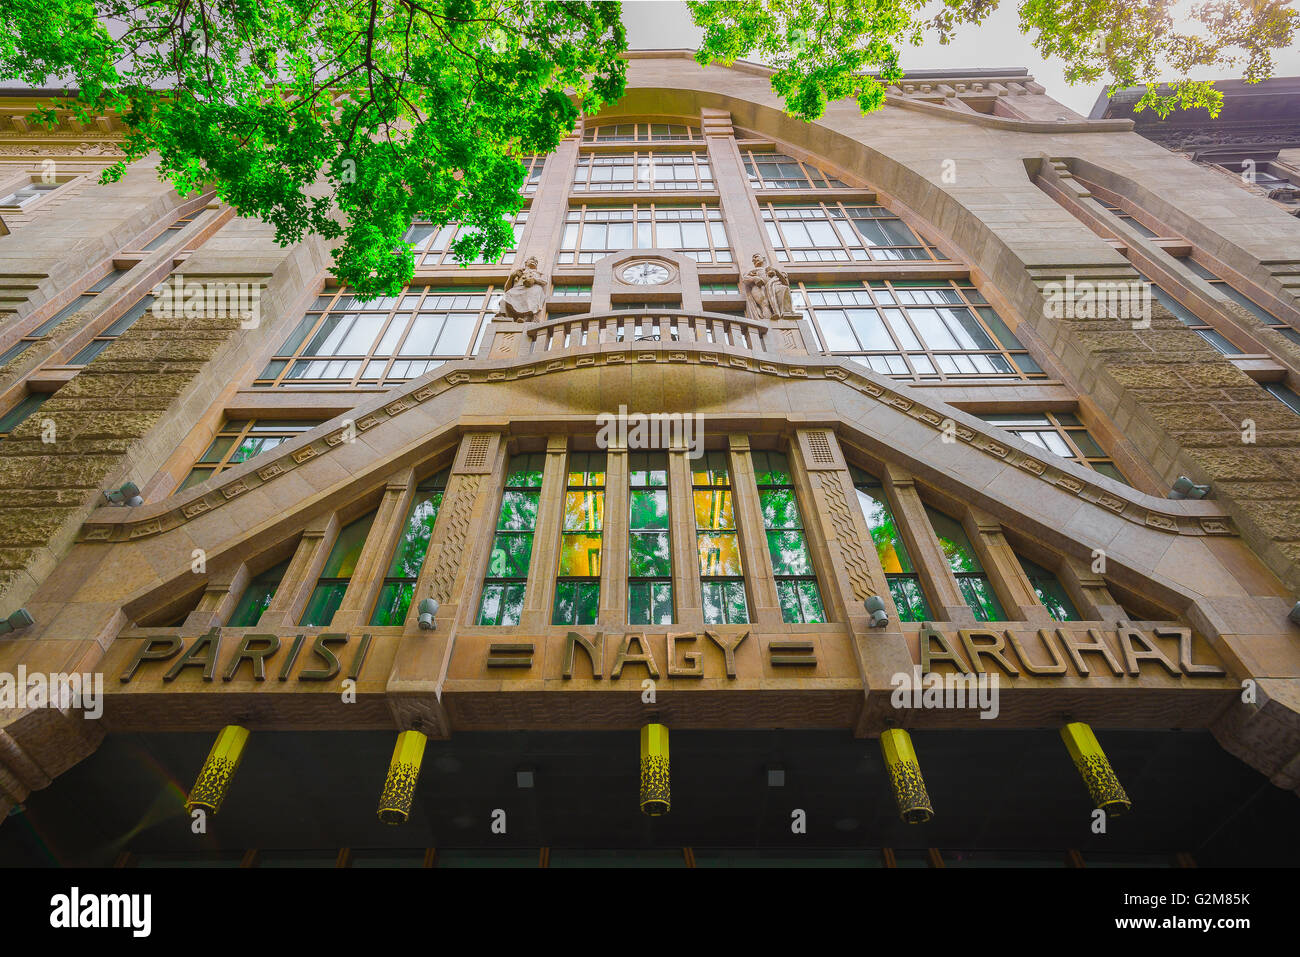 La façade de style Art Nouveau Paris Department Store (1911) le logement dans la librairie Alexandra Terezvaros district de Budapest, Hongrie. Banque D'Images